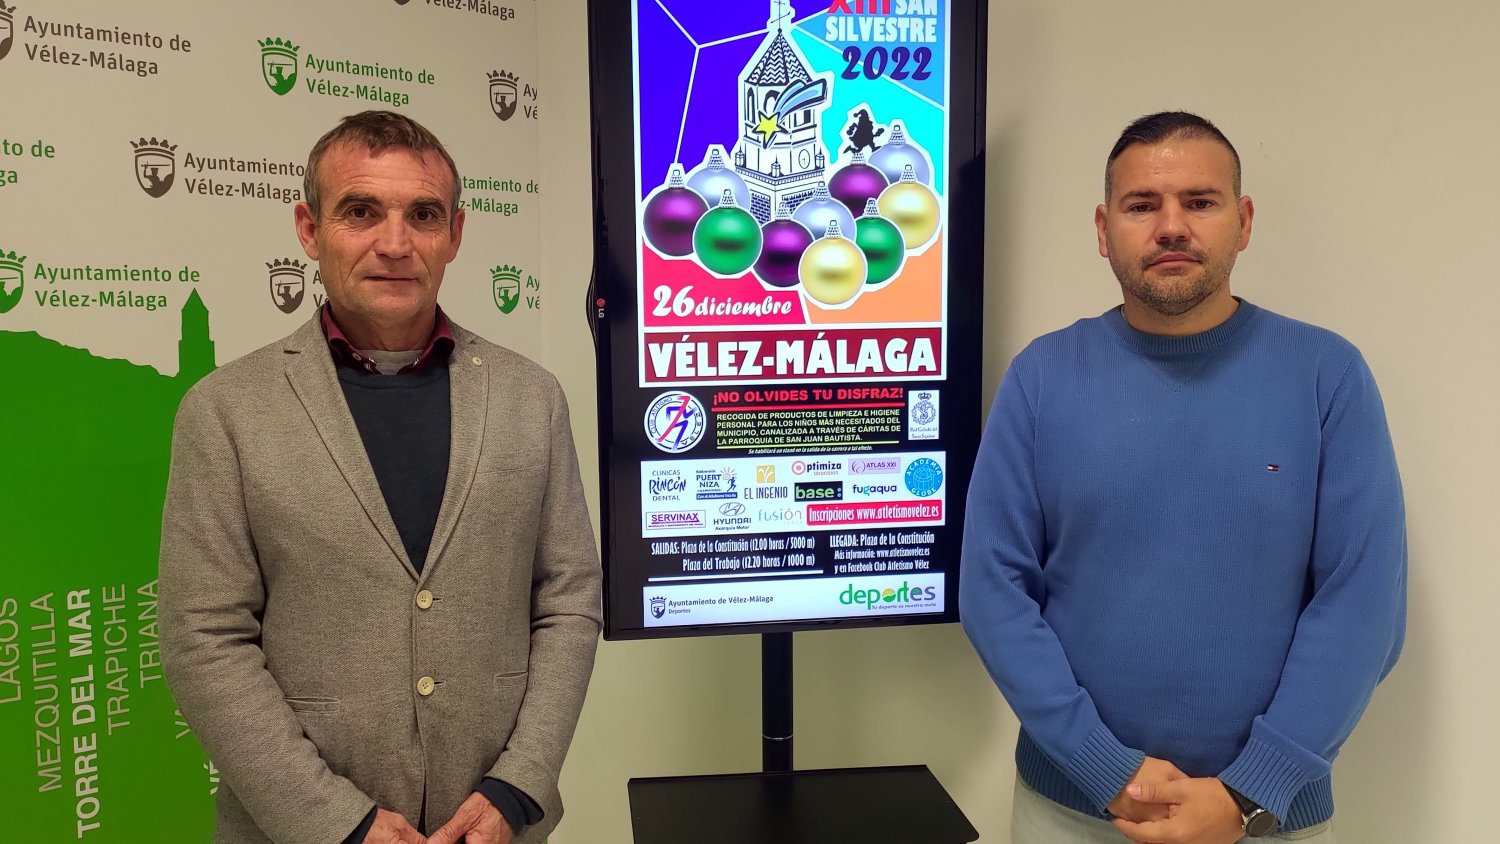 Vélez-Málaga celebrará la XIII Carrera de San Silvestre el próximo 26 de diciembre